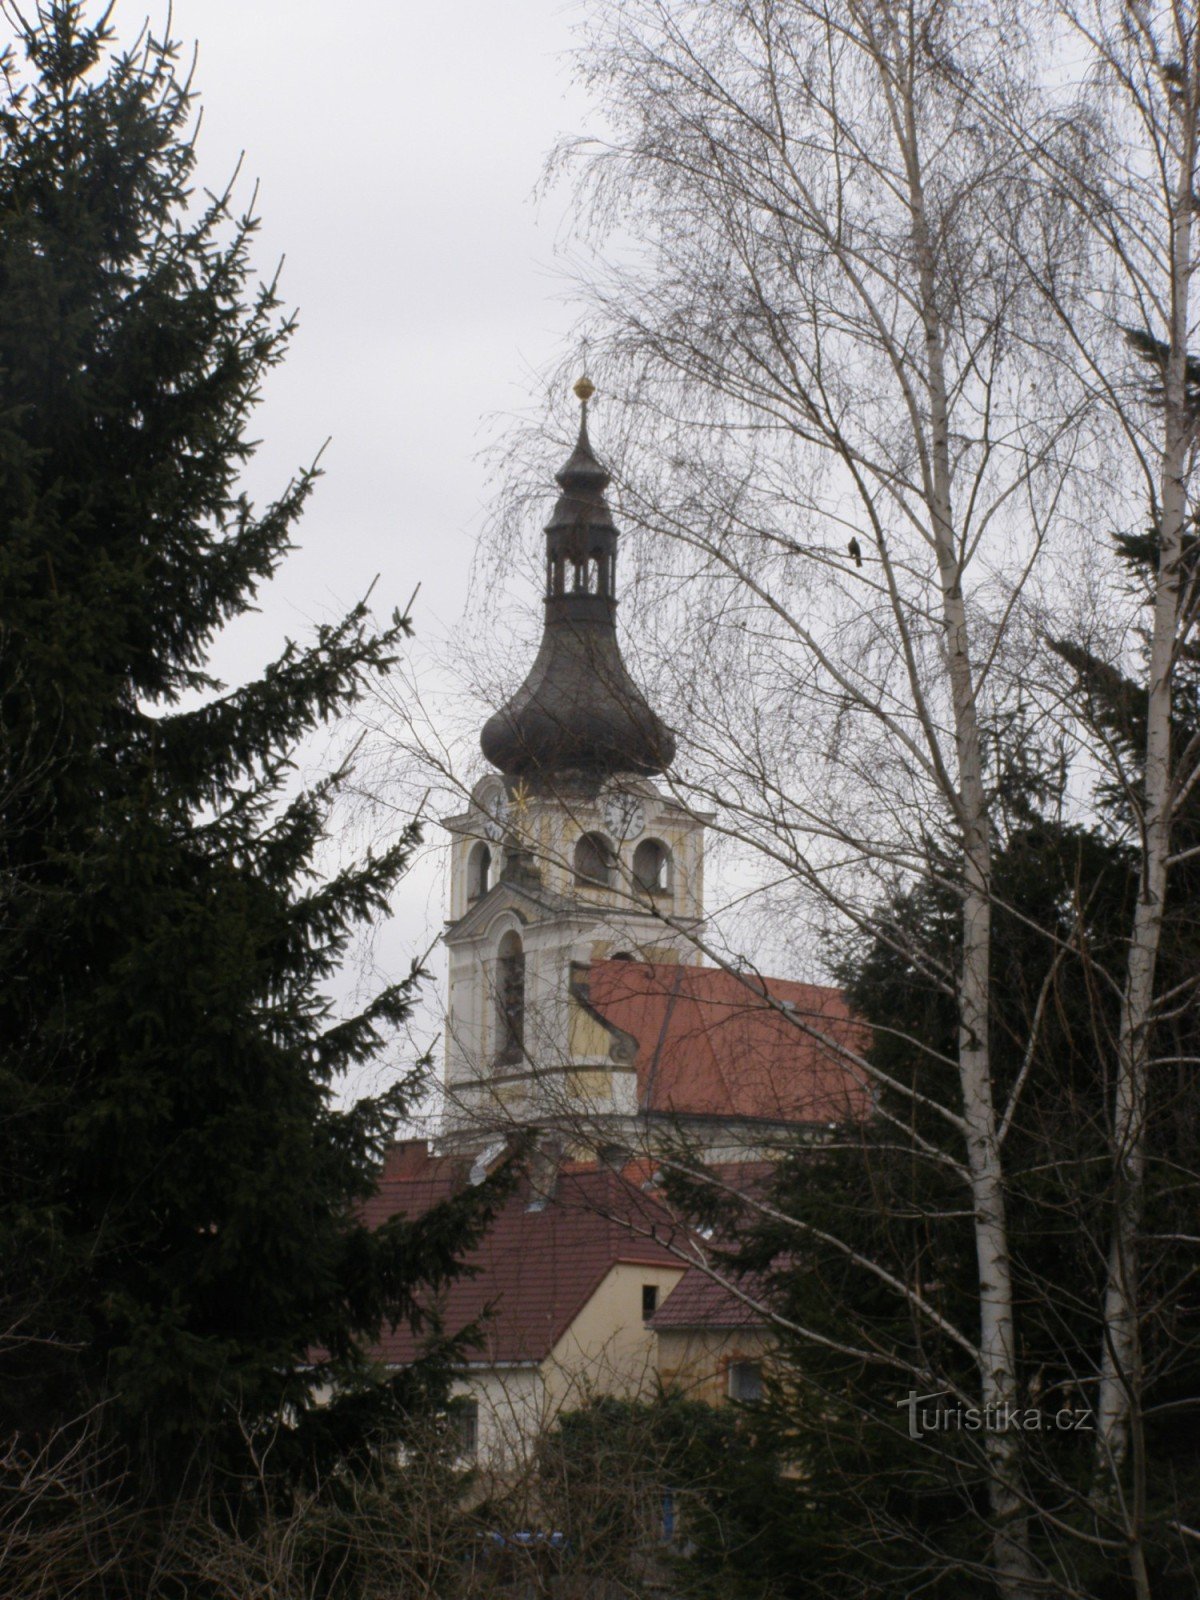 Hořice – Église de la Nativité de la Vierge Marie